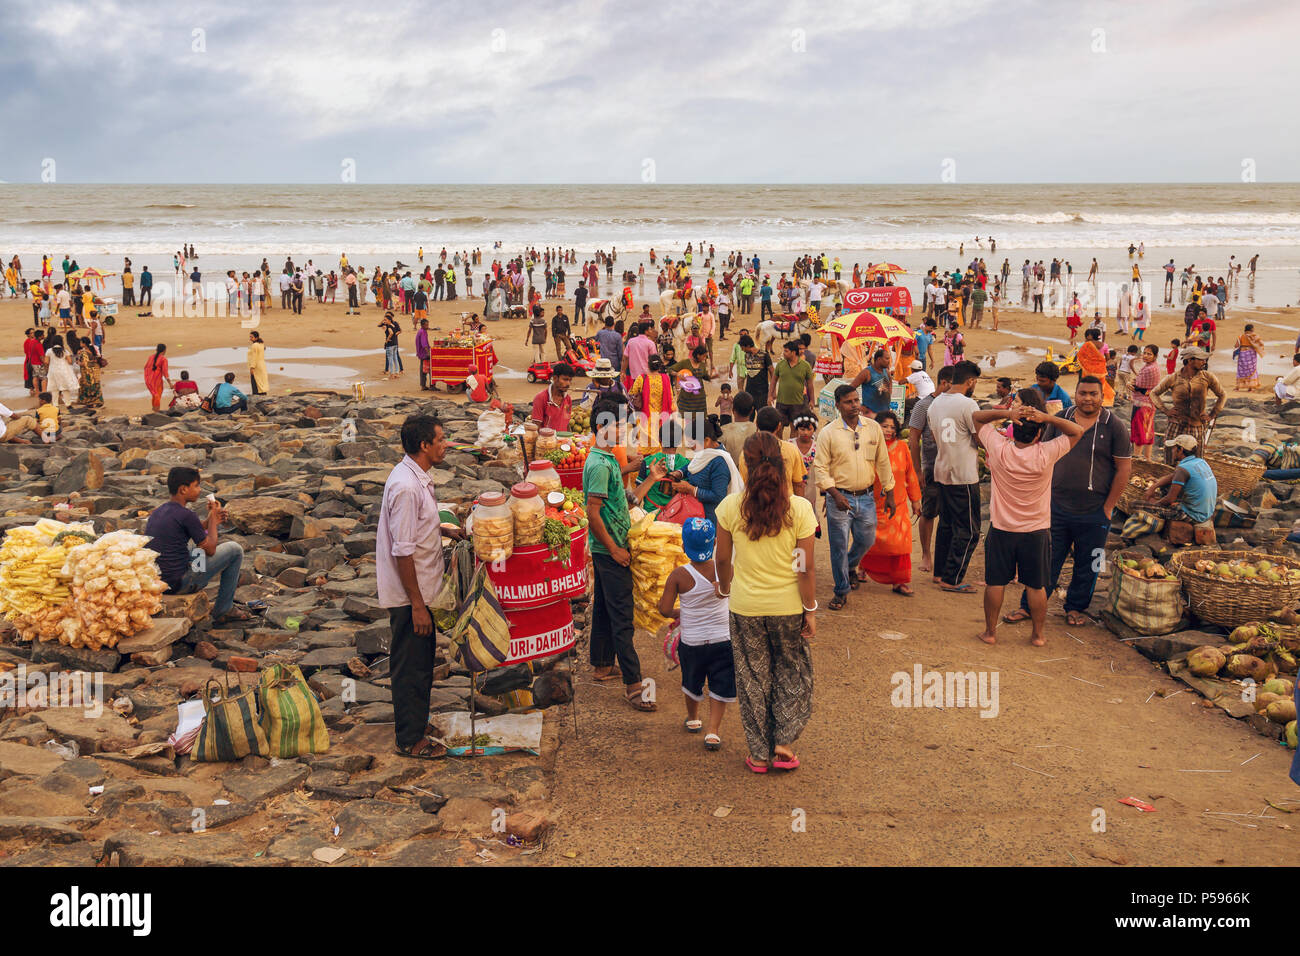 Plage de la mer indienne bondée de touristes et de vendeurs à Digha, dans l'ouest du Bengale. Une destination touristique populaire. Banque D'Images